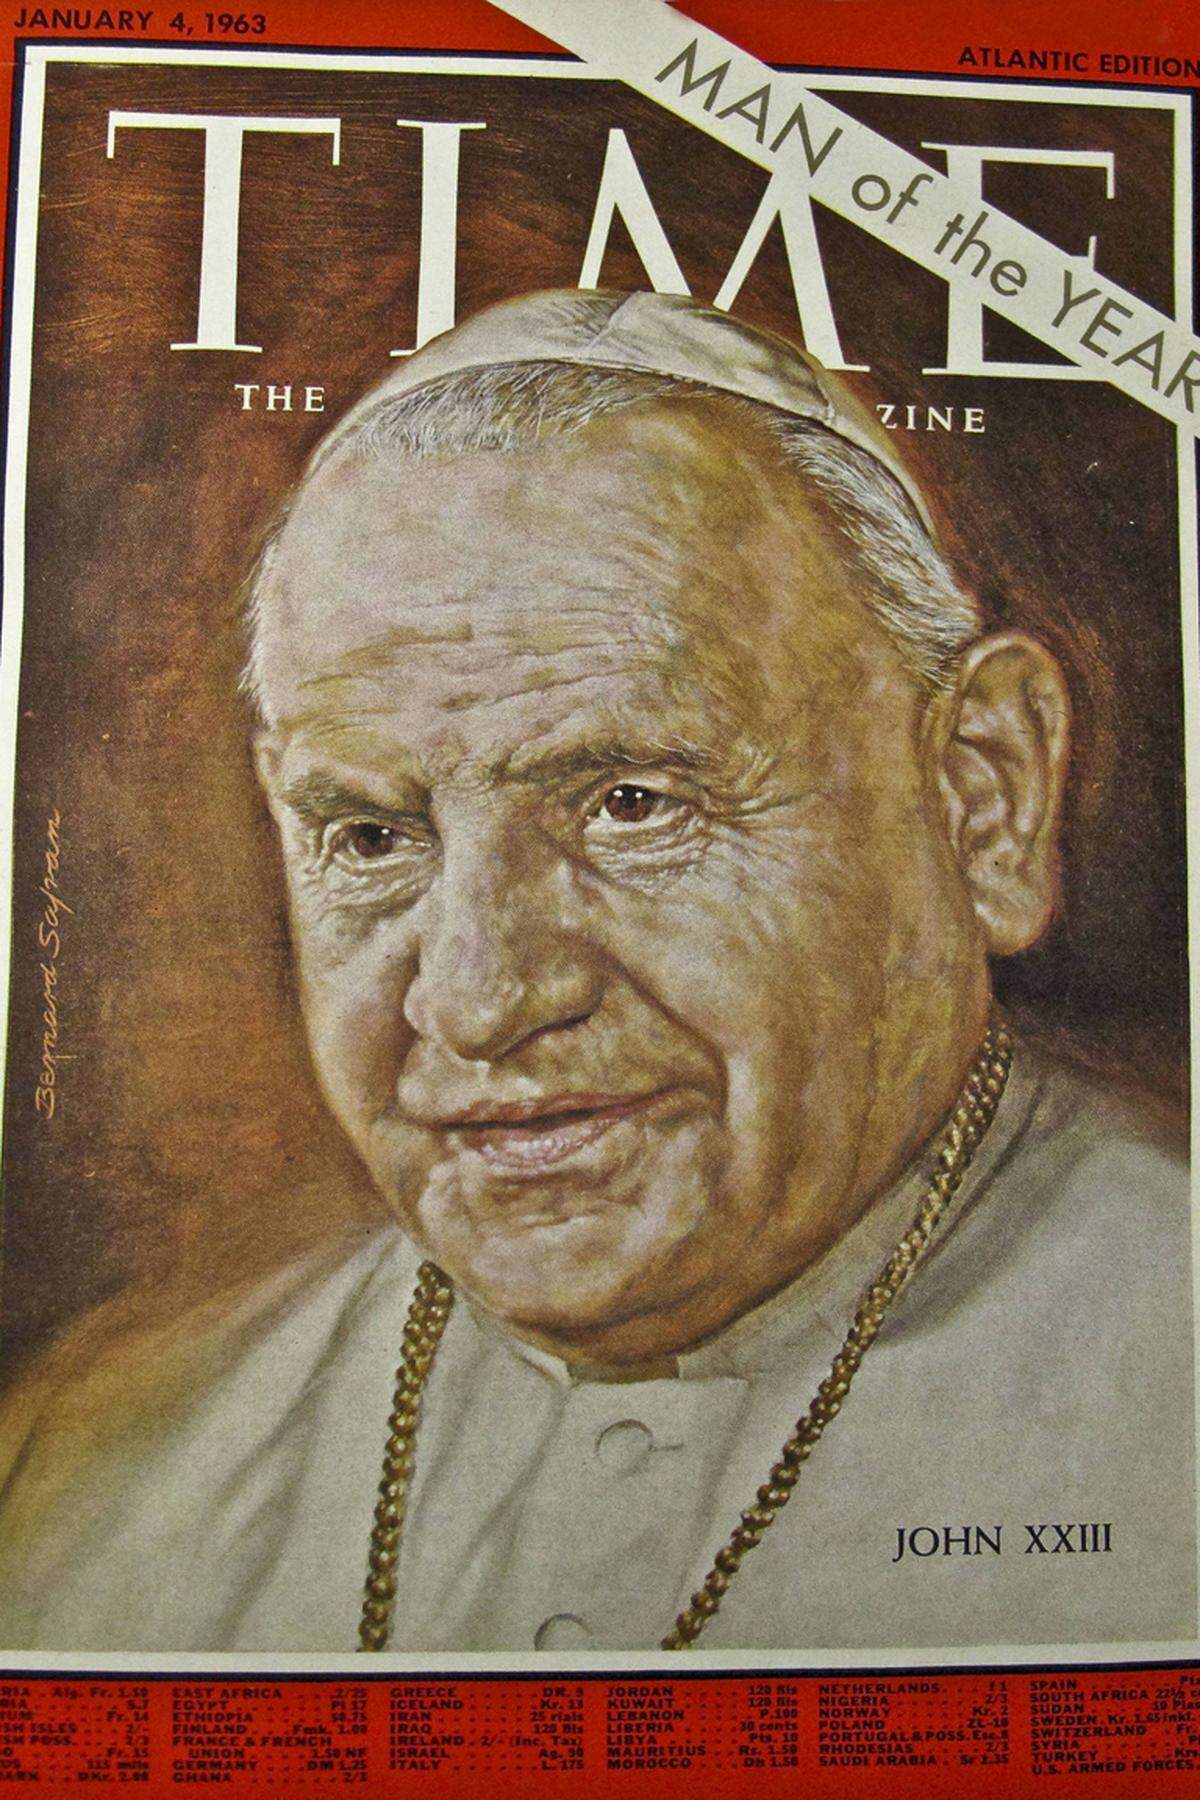 Am 3. September 2000 wurde Johannes XXIII. seliggesprochen. Die katholische Kirchenlehre sieht vor, dass die Heiligsprechung nur für solche Persönlichkeiten infrage kommt, die bereits seliggesprochen sind. Nach der Heiligsprechung wird es möglich, Kirchen nach dem früheren Papst zu benennen. Für die Heiligsprechung am Sonntag (27. April) gab der aktuelle Papst Franziskus auch ohne einen erneuten Wundernachweis Grünes Licht.Bild: Papst Johannes XXIII als Man of the Year auf dem Titel des Time-Magazine vom 4. Jänner 1963.